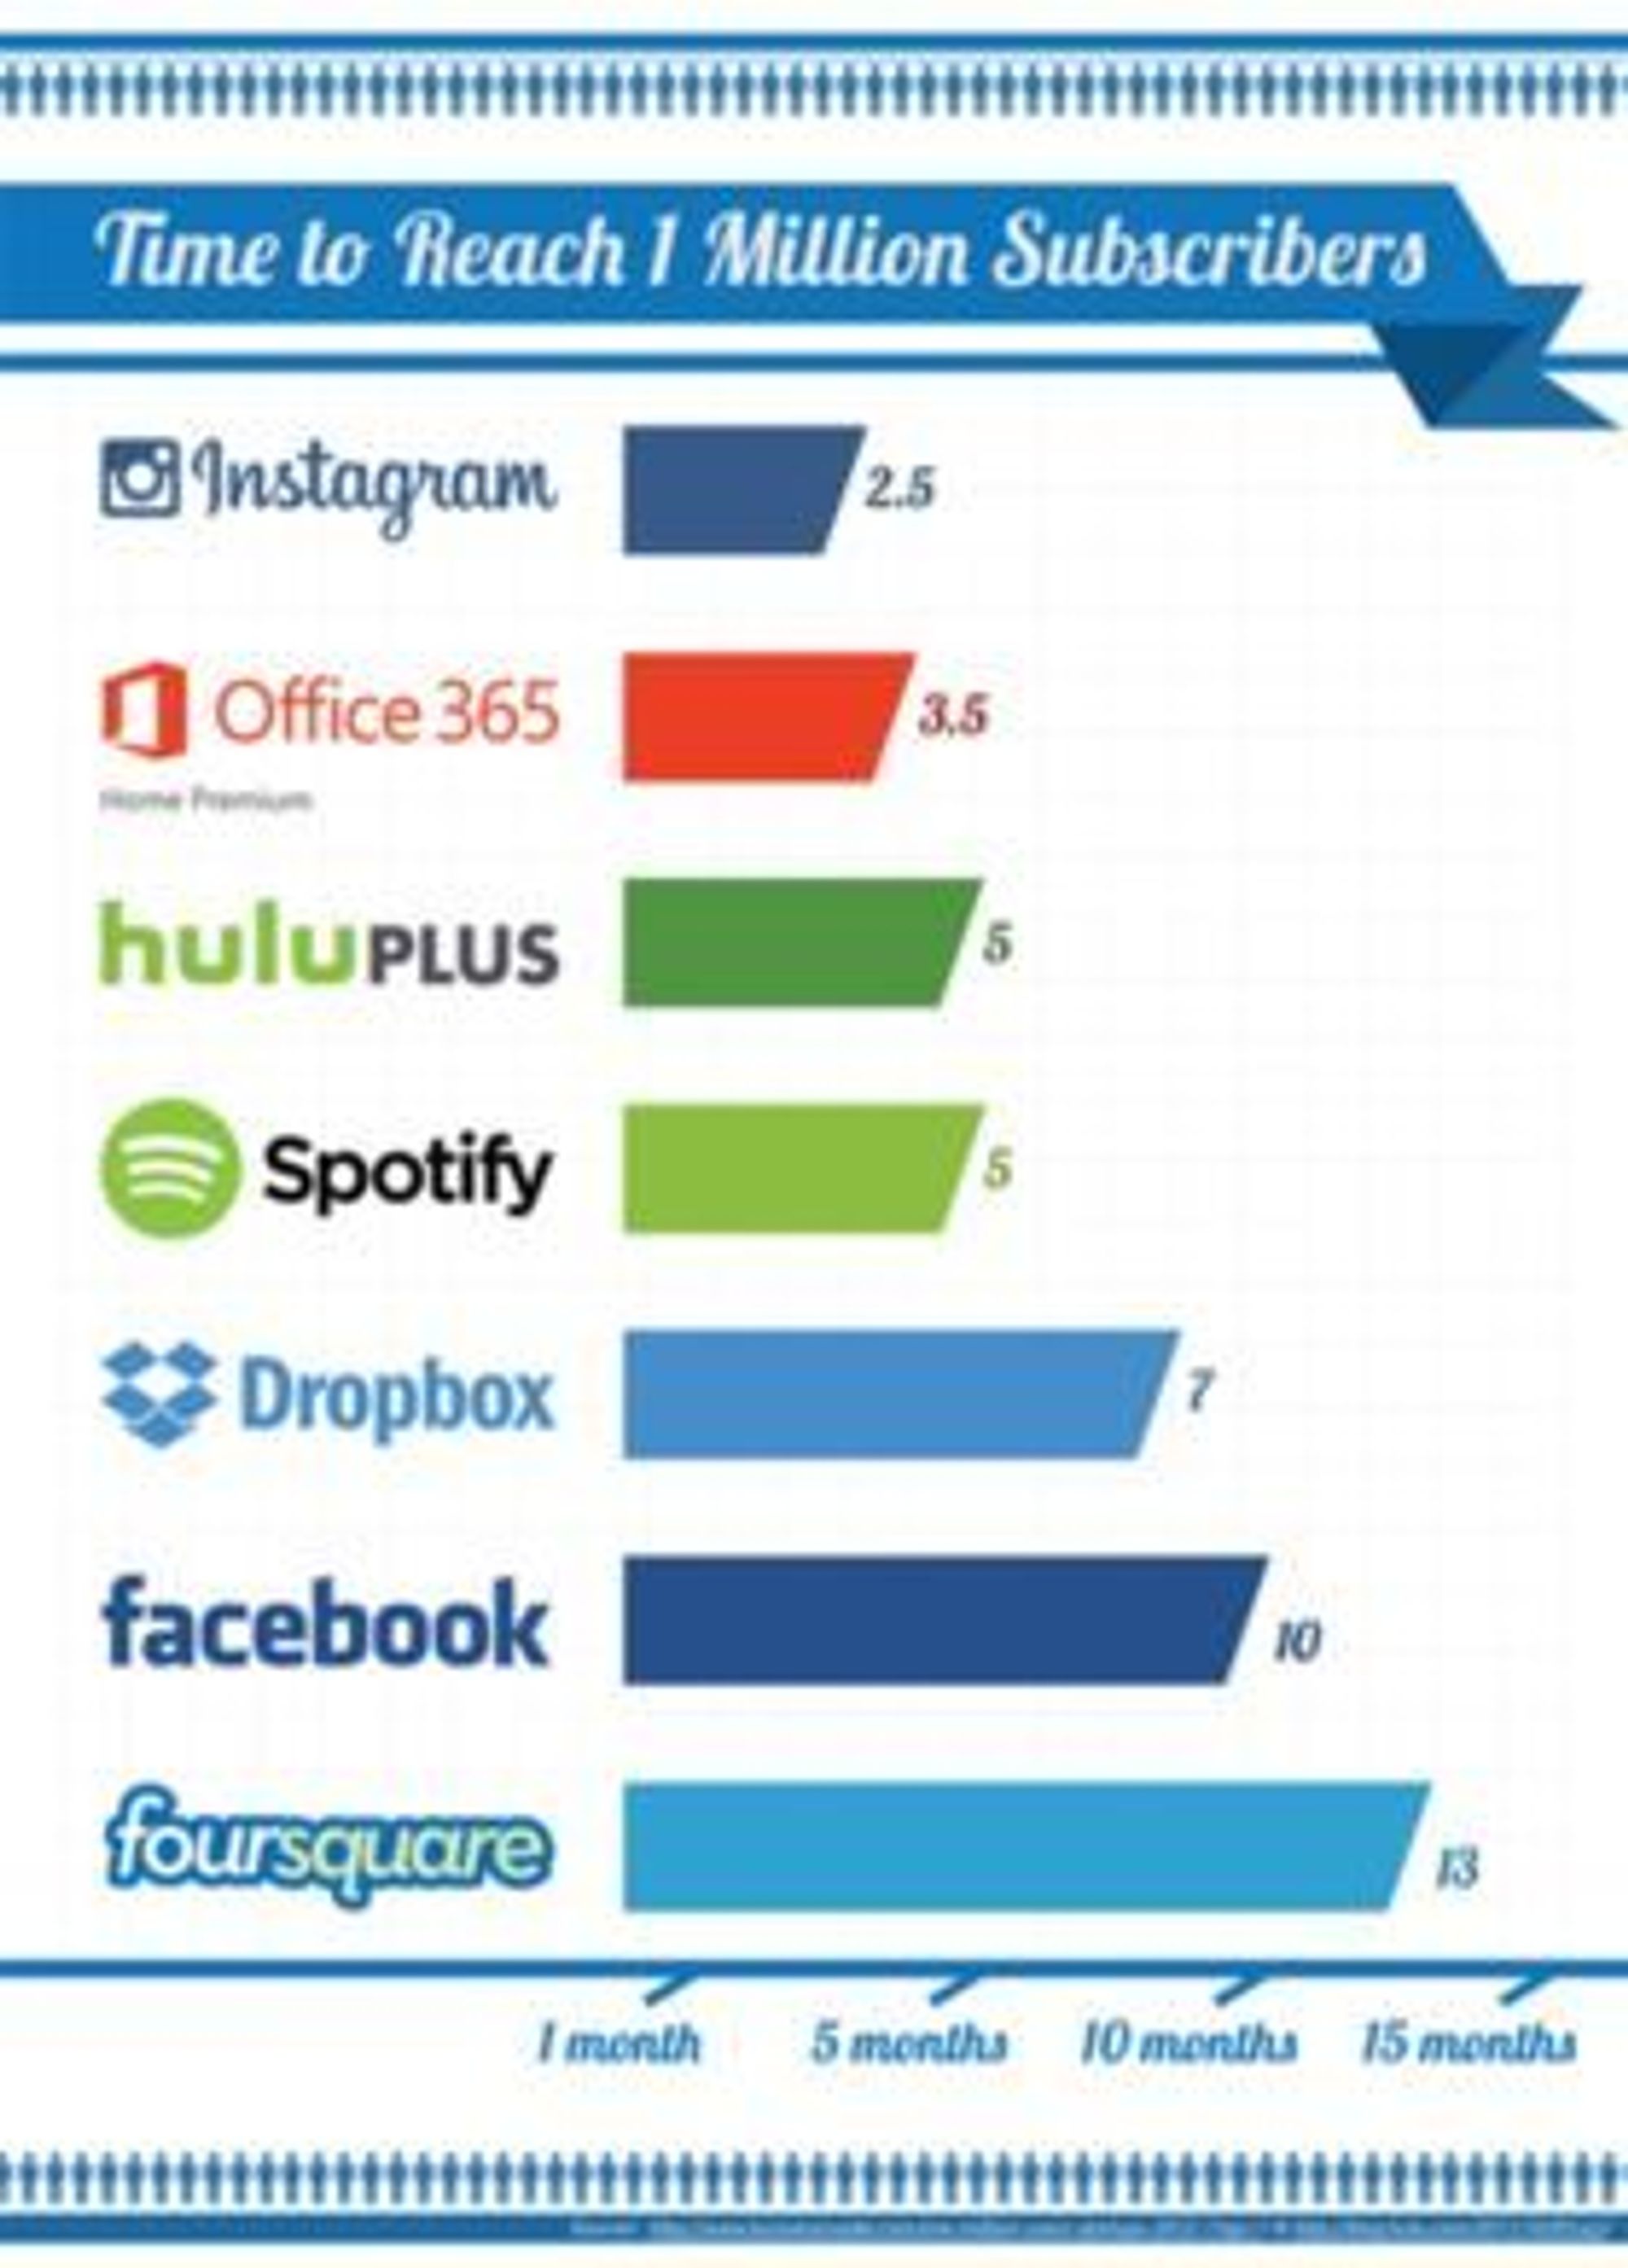 Tiden ulike tjenester har brukt på å nå 1 million brukere. Kildene er BusinessInsider, hulu.com og Microsoft.